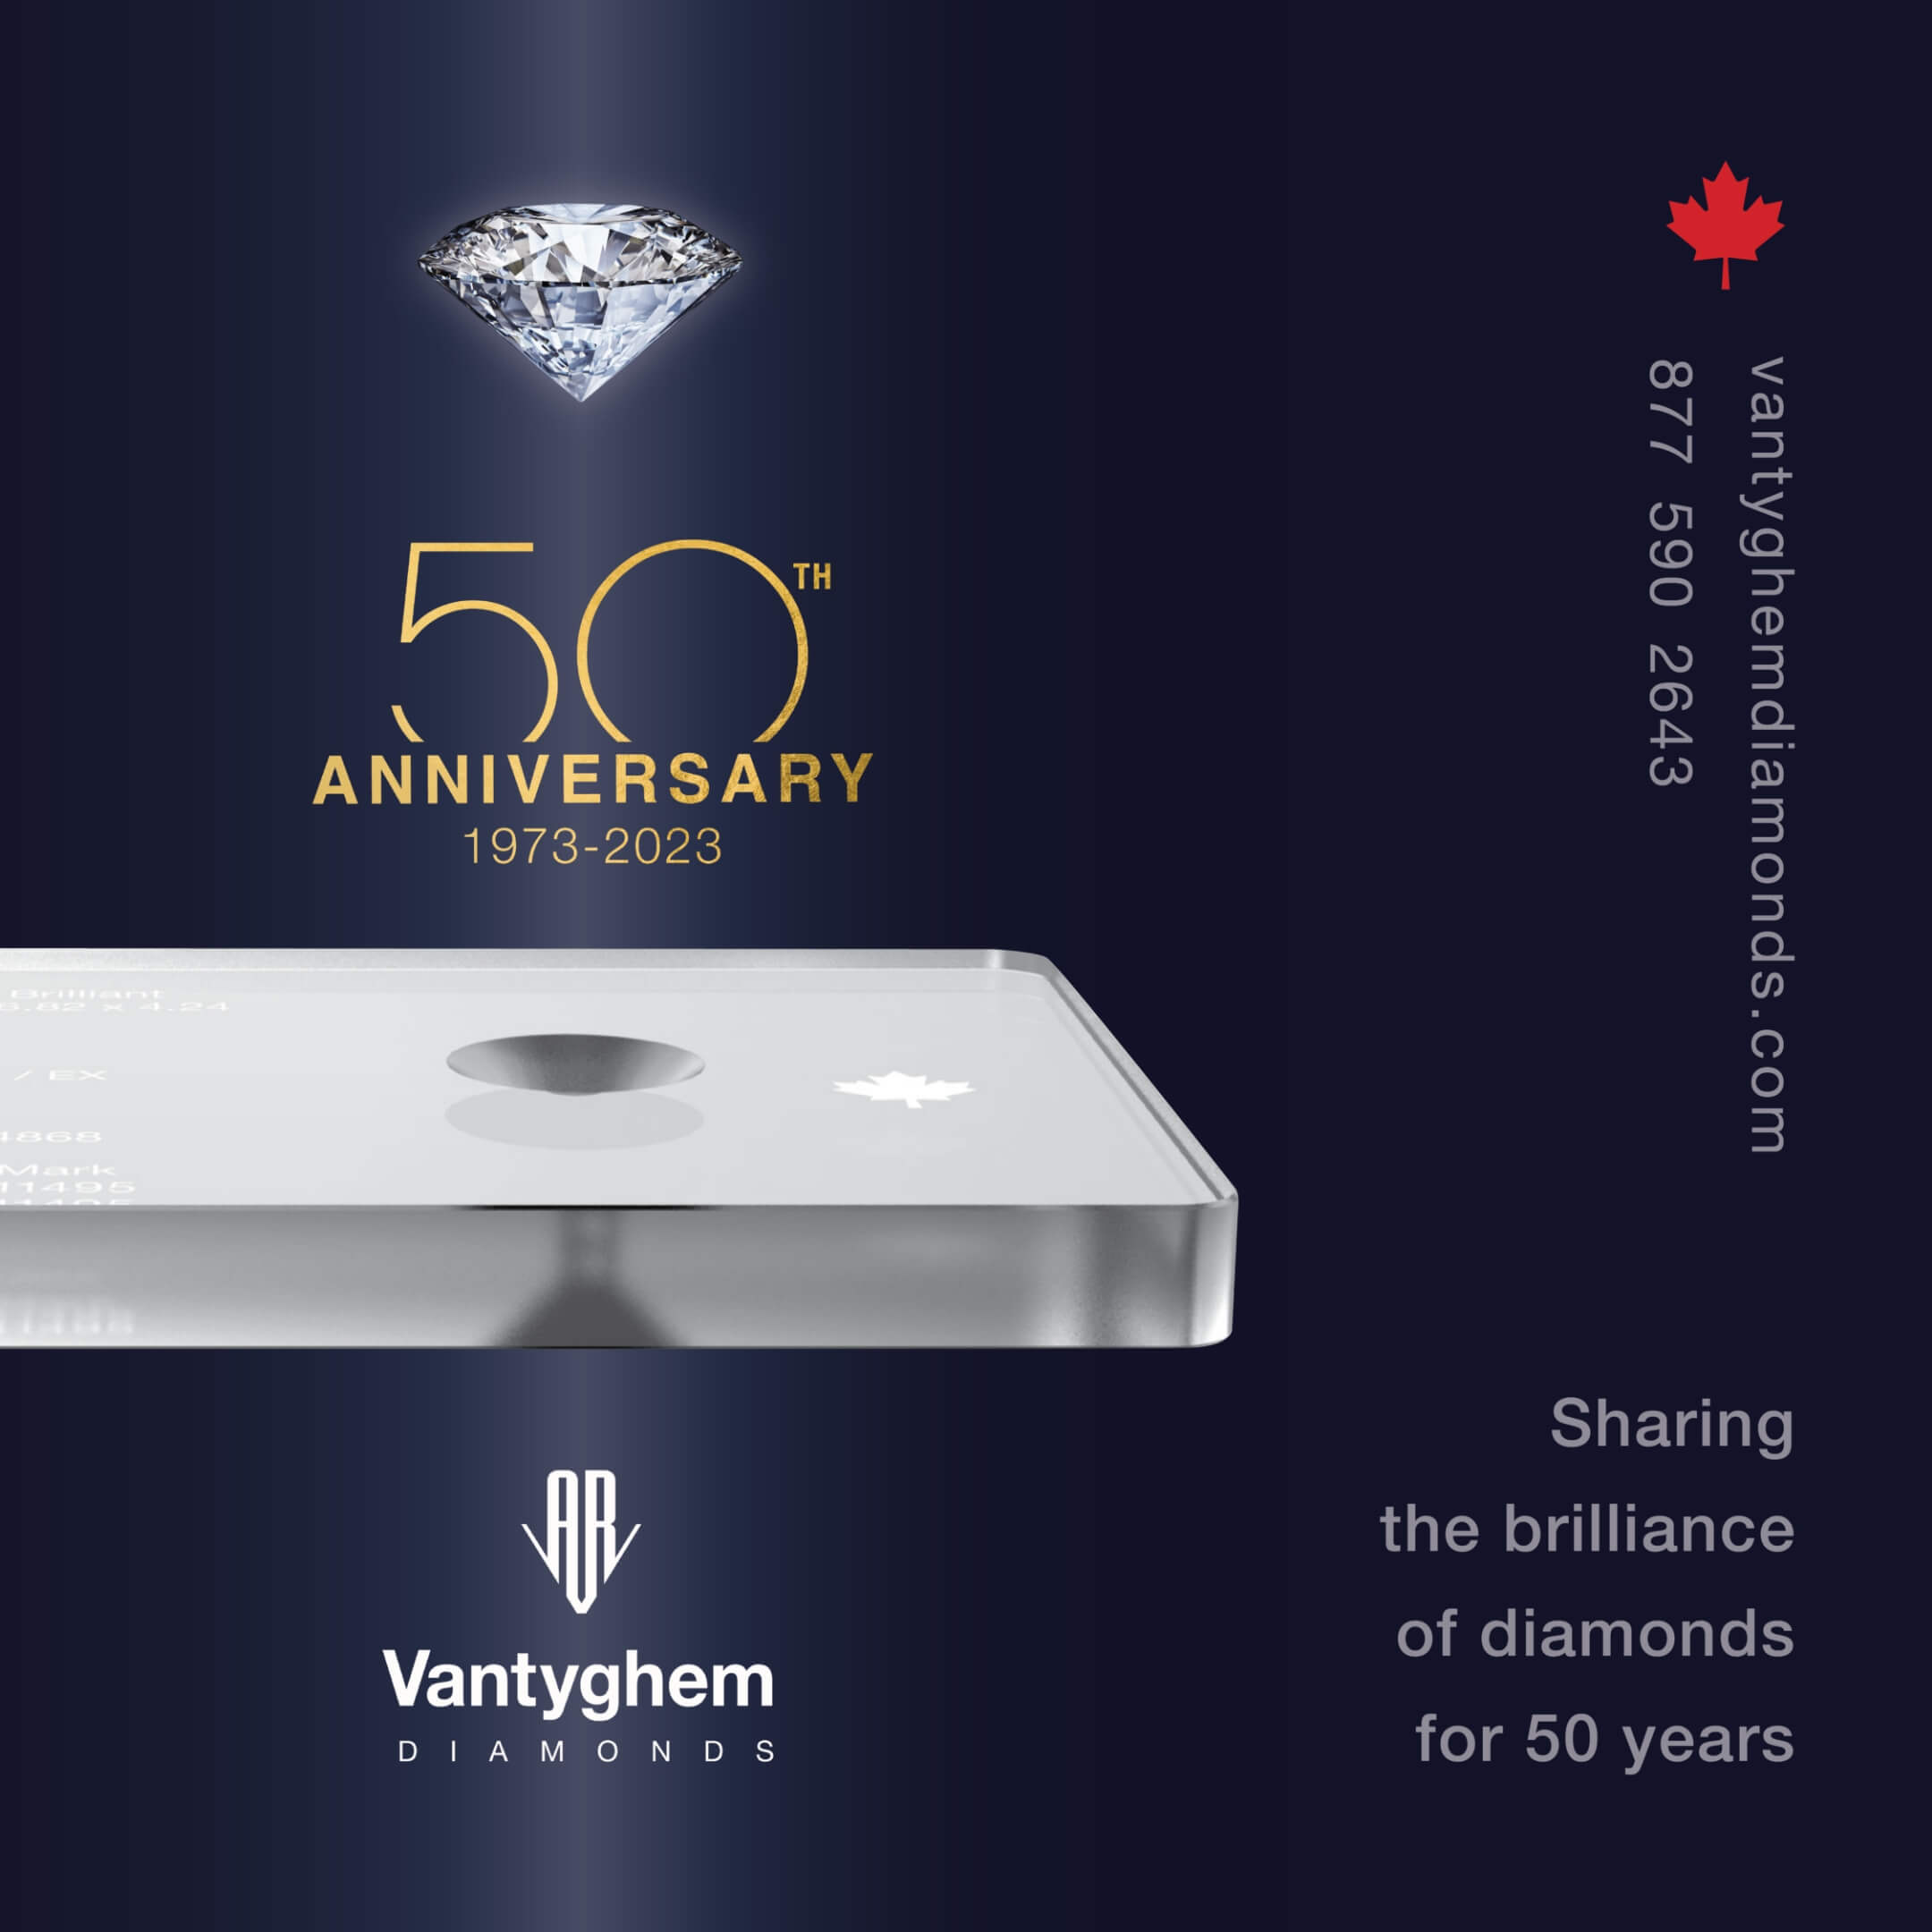 Vantyghem anniversary key visual